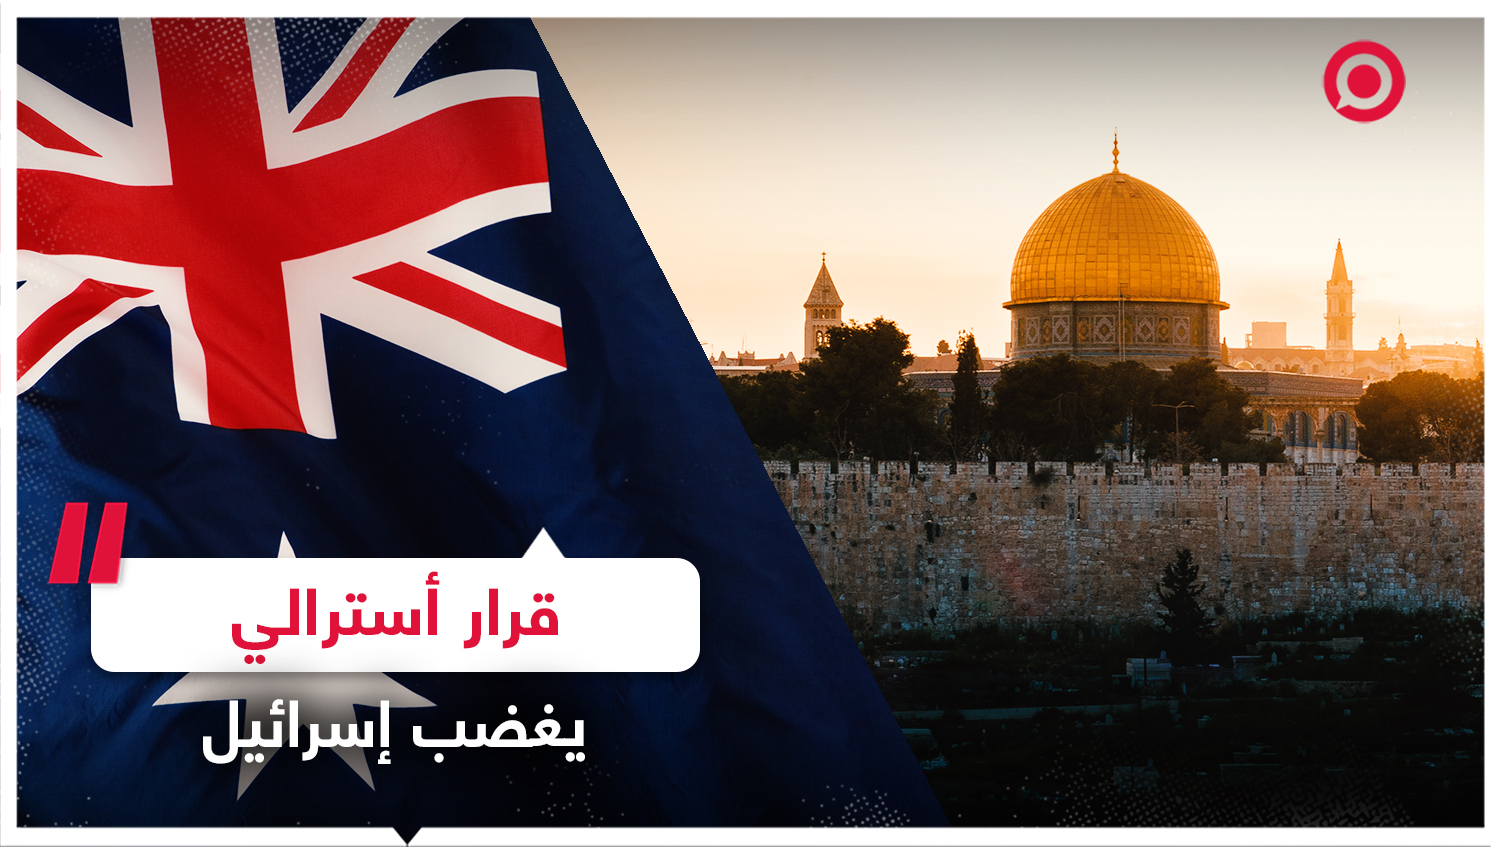 خطوة أسترالية تلاقي ترحيبا فلسطينيا واستنكارا إسرائيليا